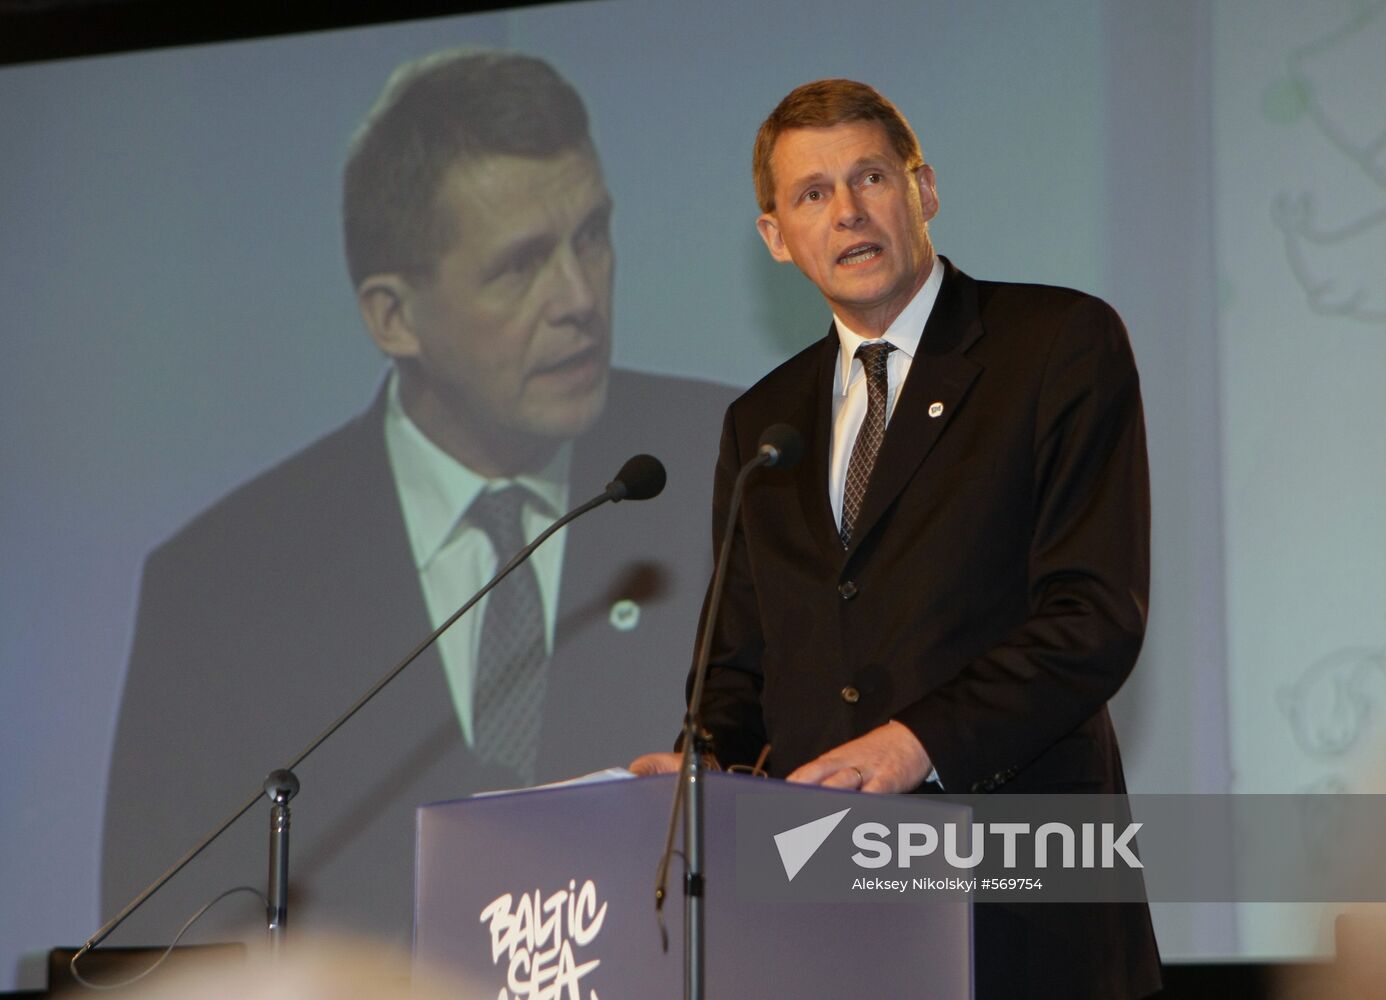 Matti Vanhanen speaks at Baltic Sea Action Summit 2010